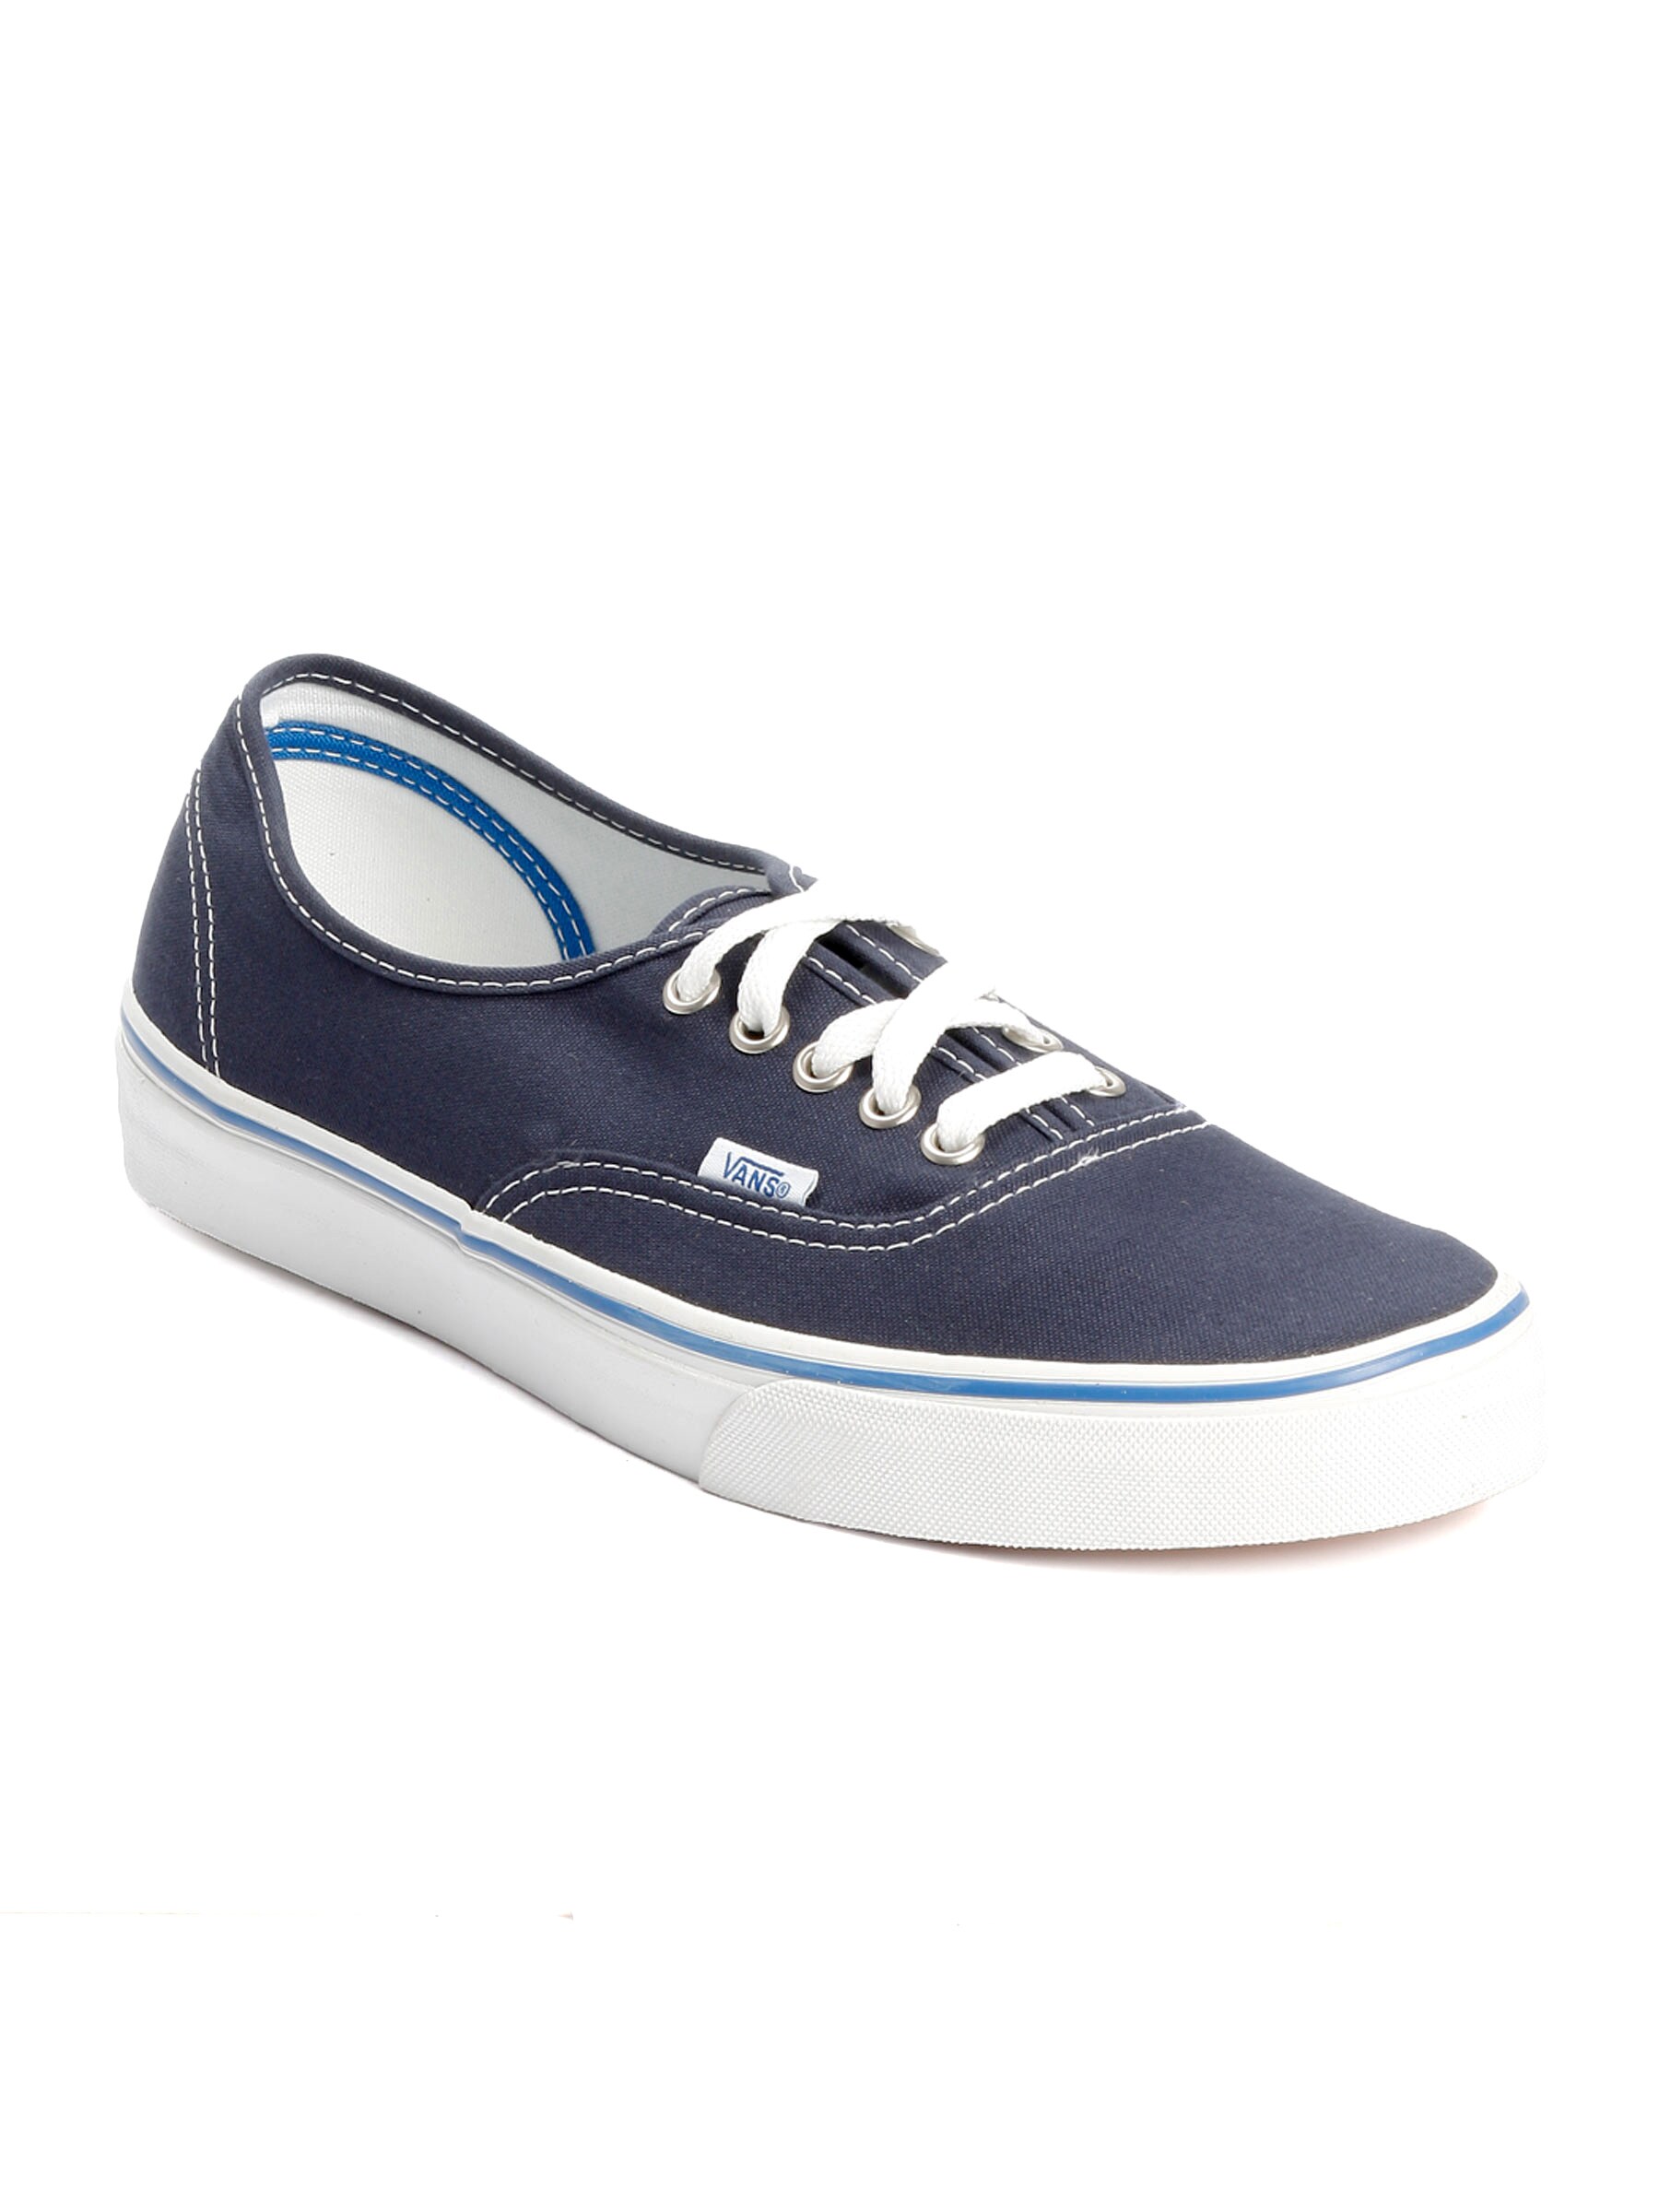 Vans Men Authentic Navy Blue Casual Shoes